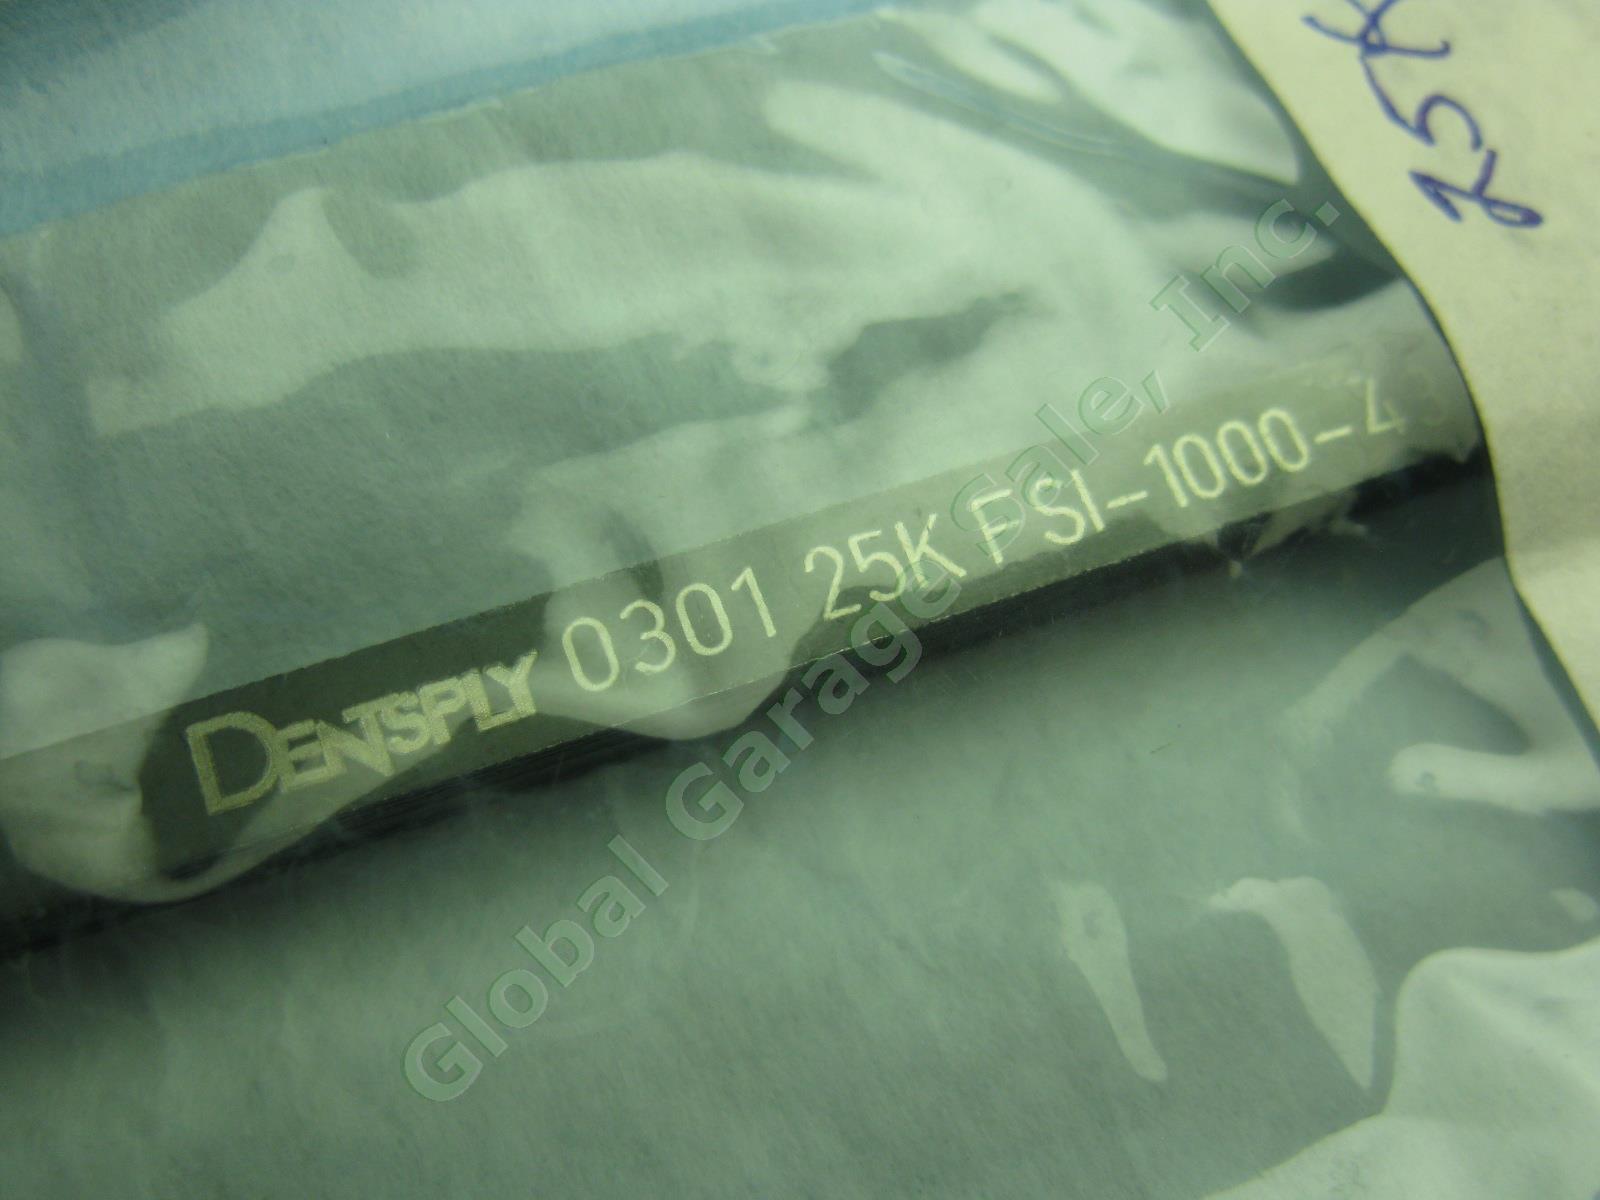 5 Dentsply Cavitron Ultrasonic Dental Scaler Insert Tip Lot 25K Safco Unipack NR 1